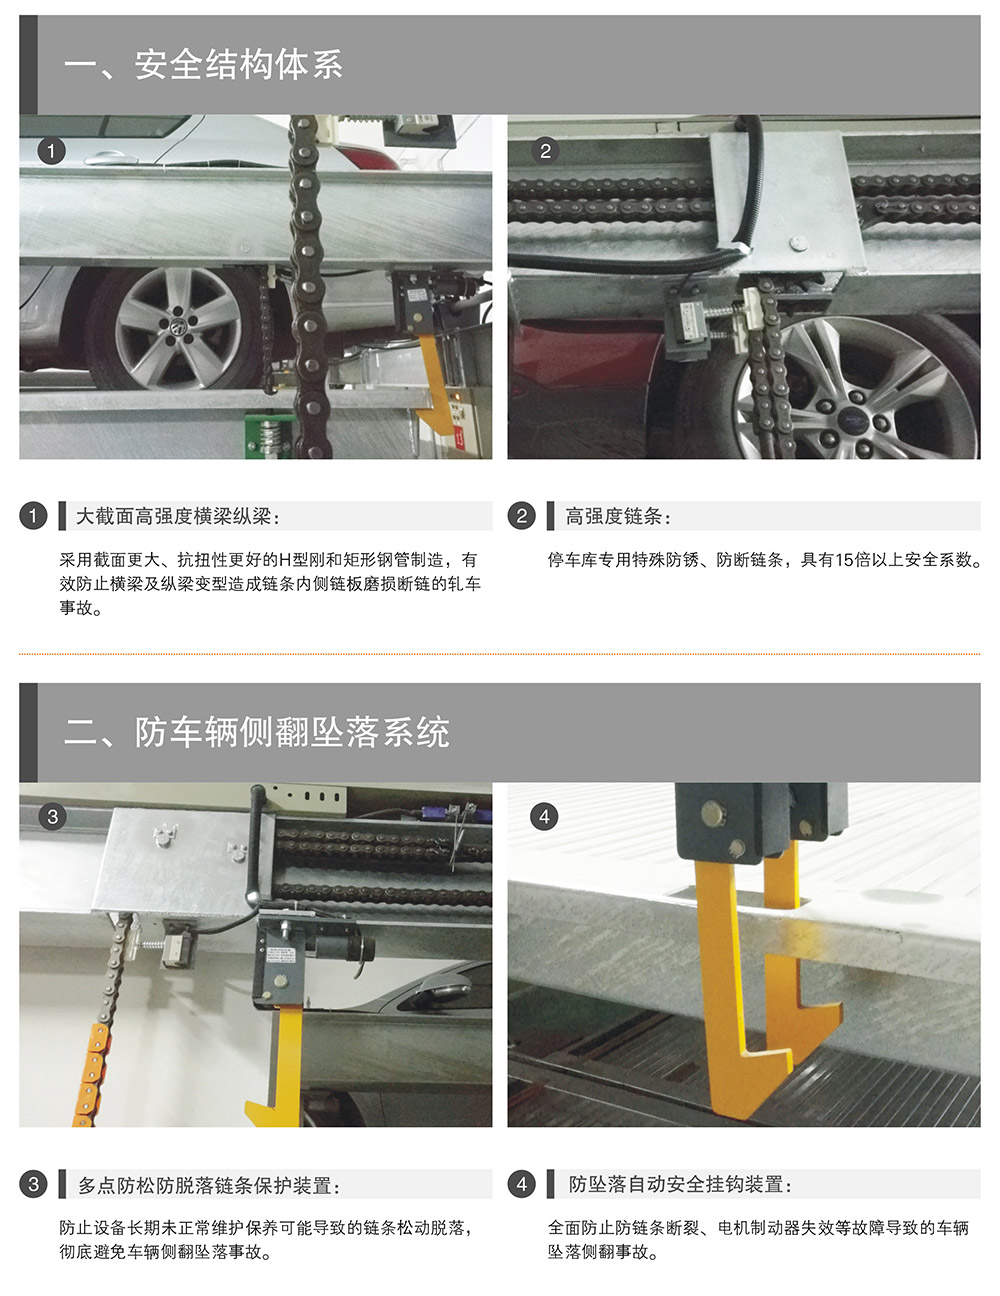 重庆四至六层PSH4-6升降横移式立体停车设备安全结构体系.jpg